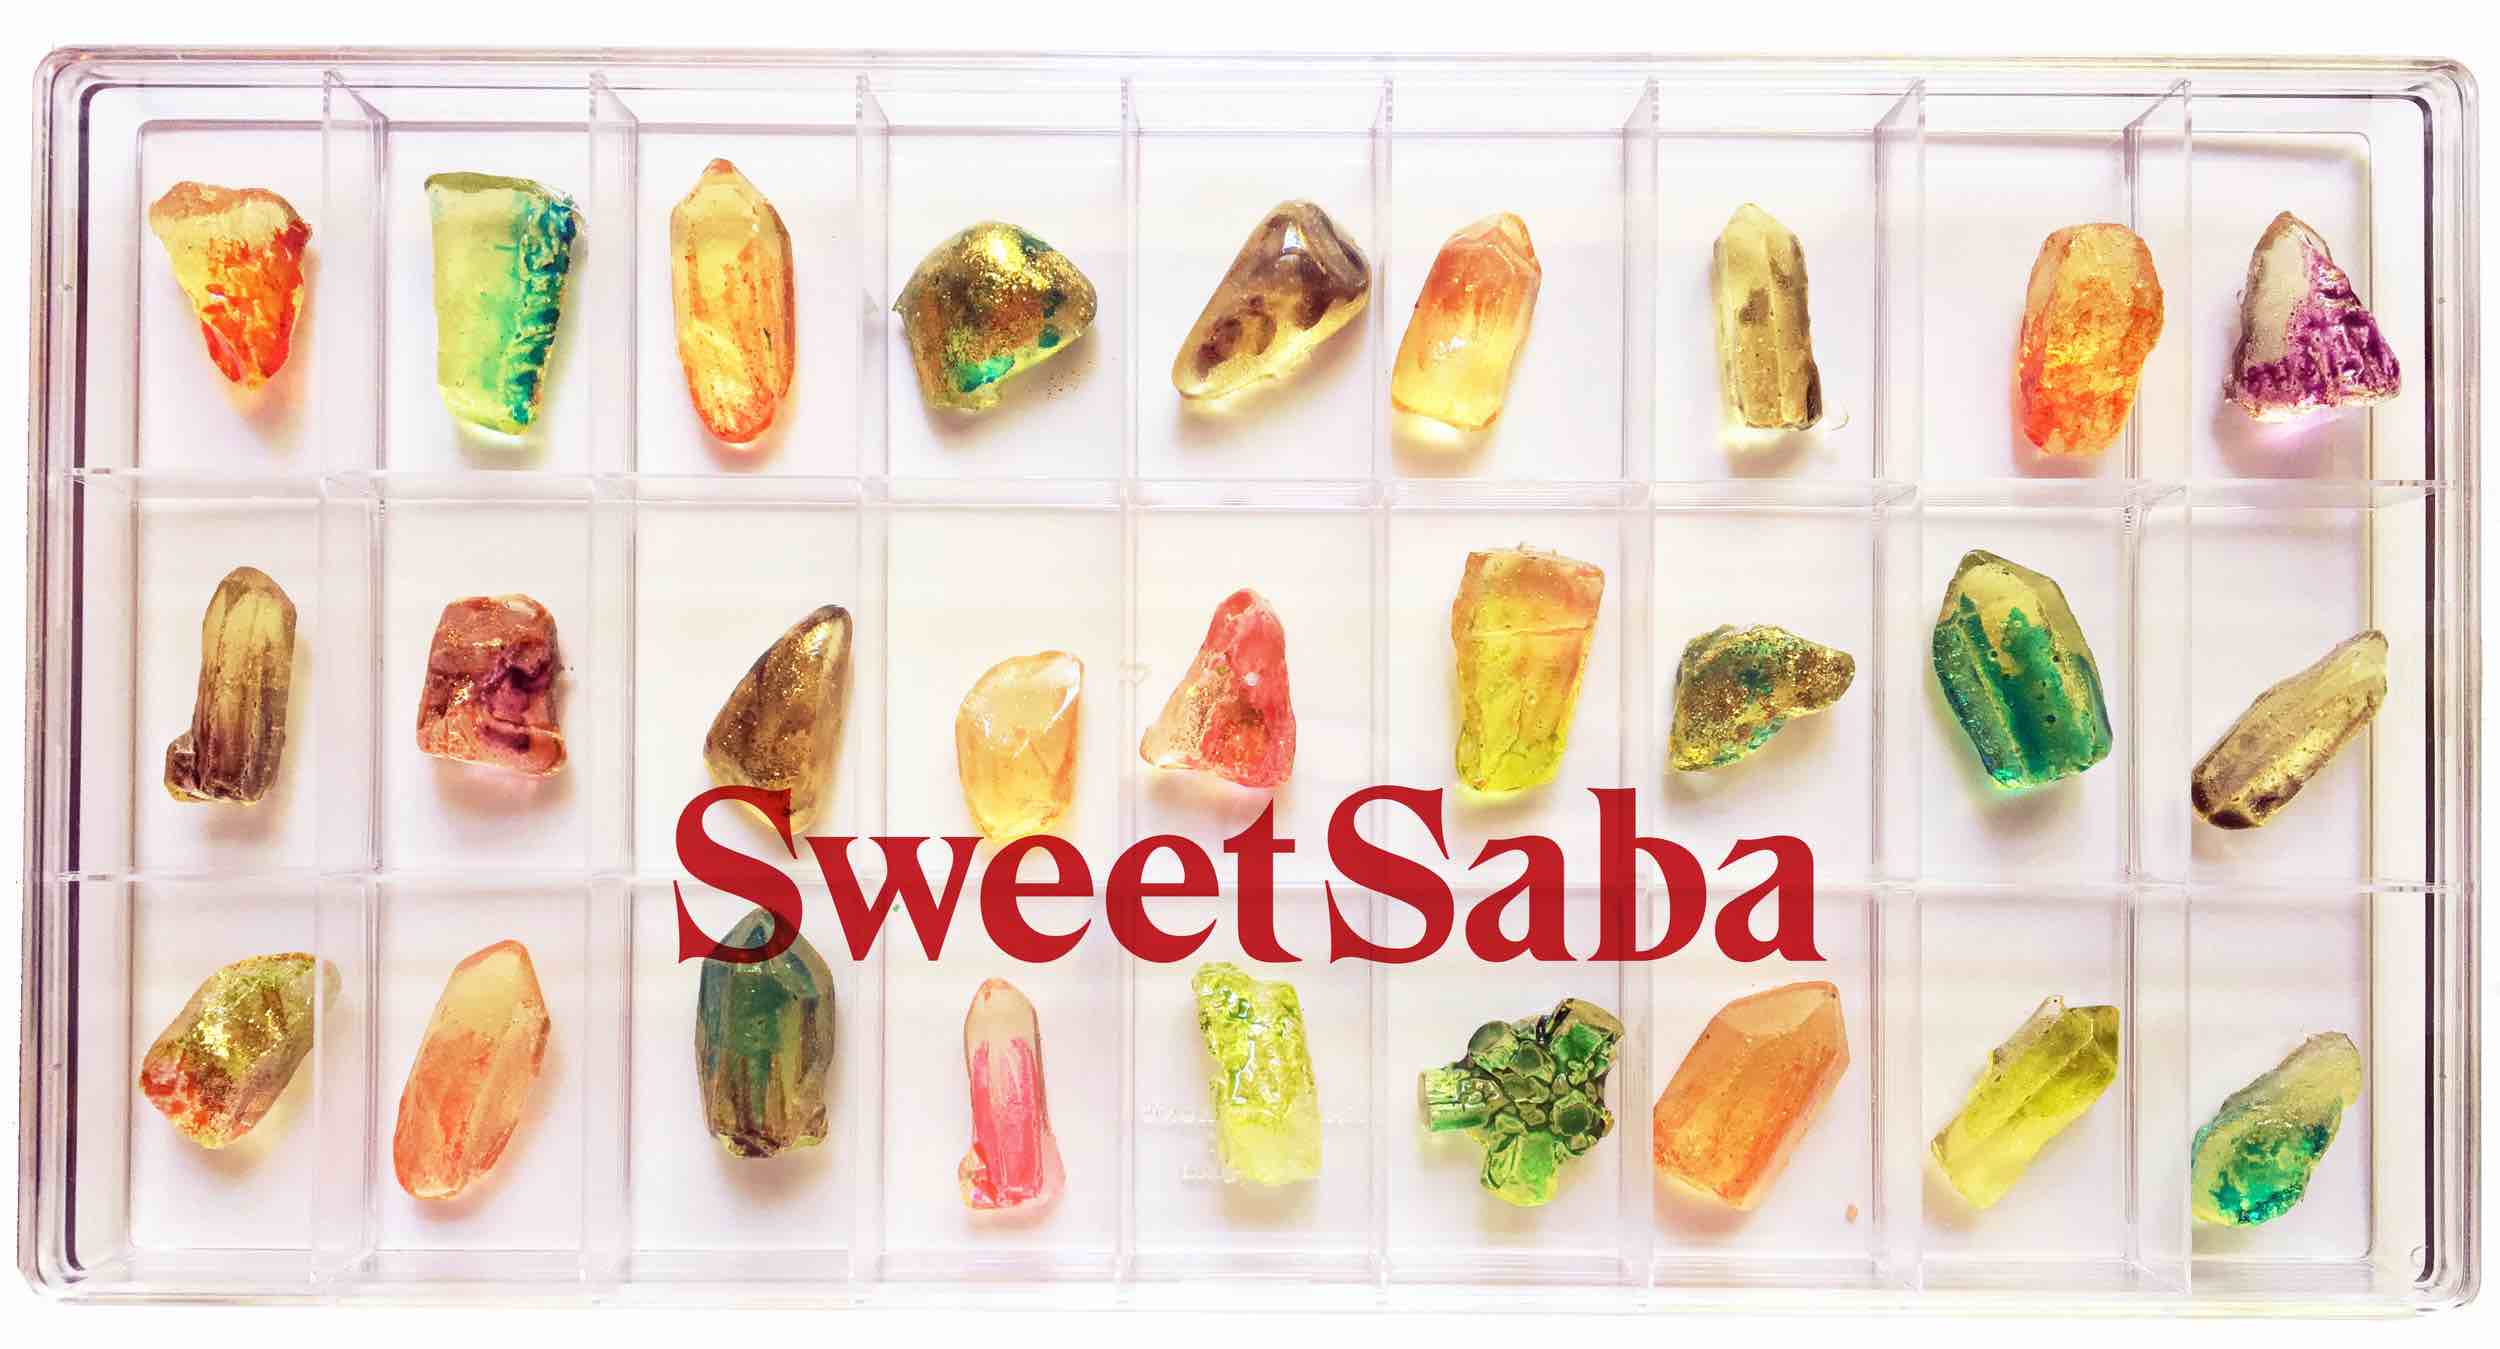 Te encantarán los originales dulces que realiza esta exitosa emprendedora con su marca "Sweet Saba"